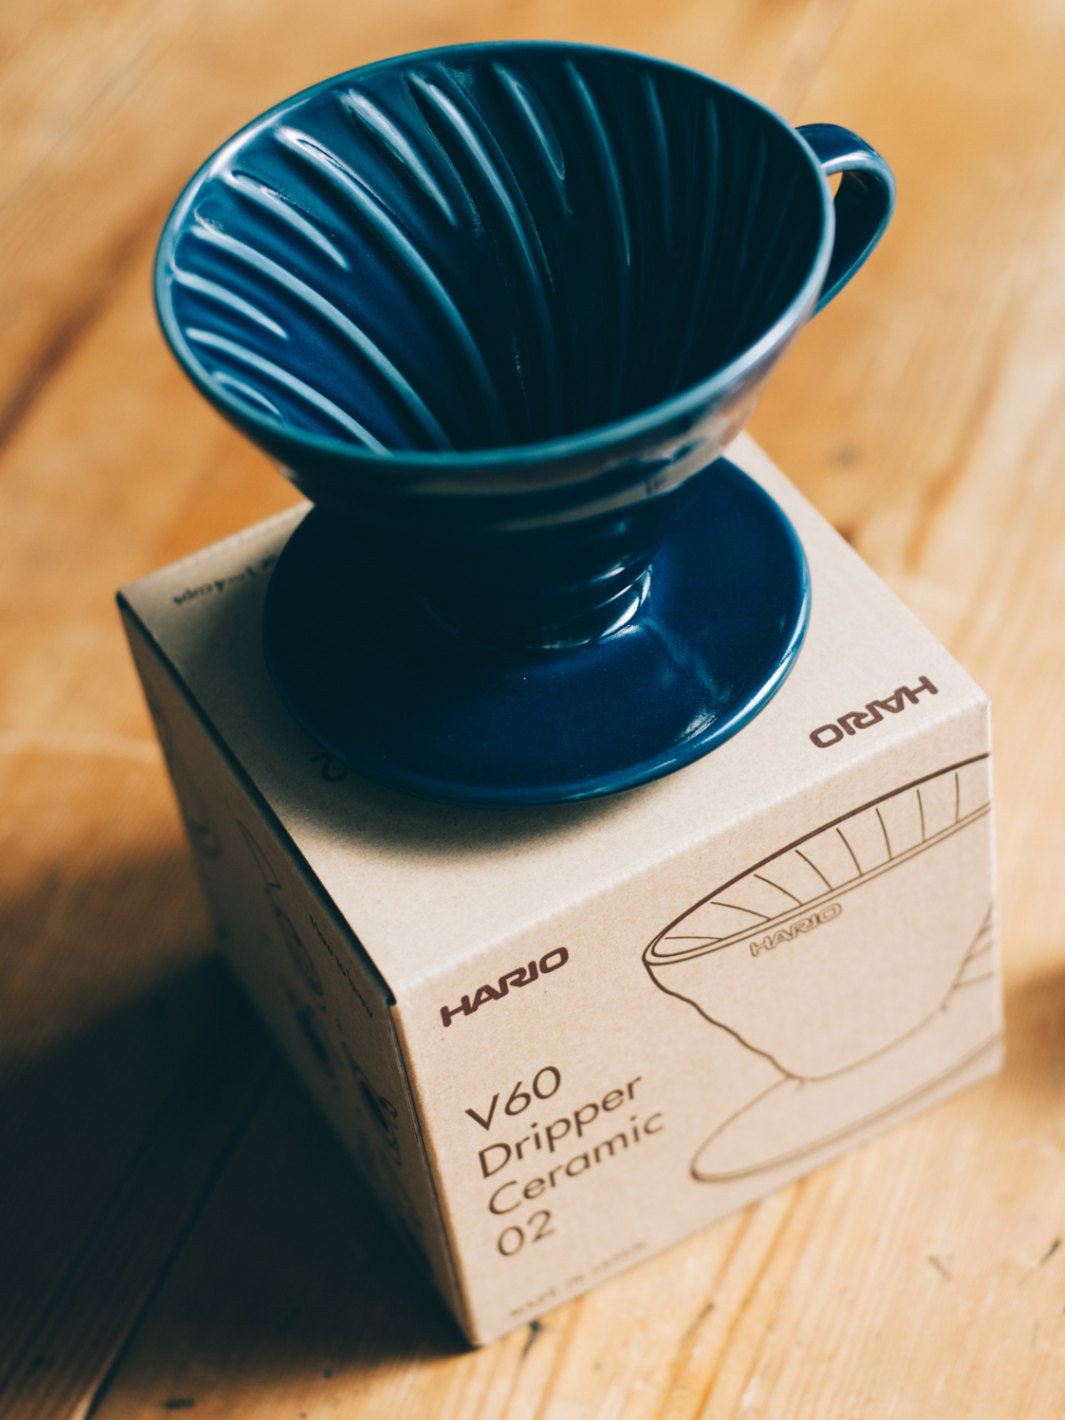 HARIO V60-02 Dripper (Ceramic)